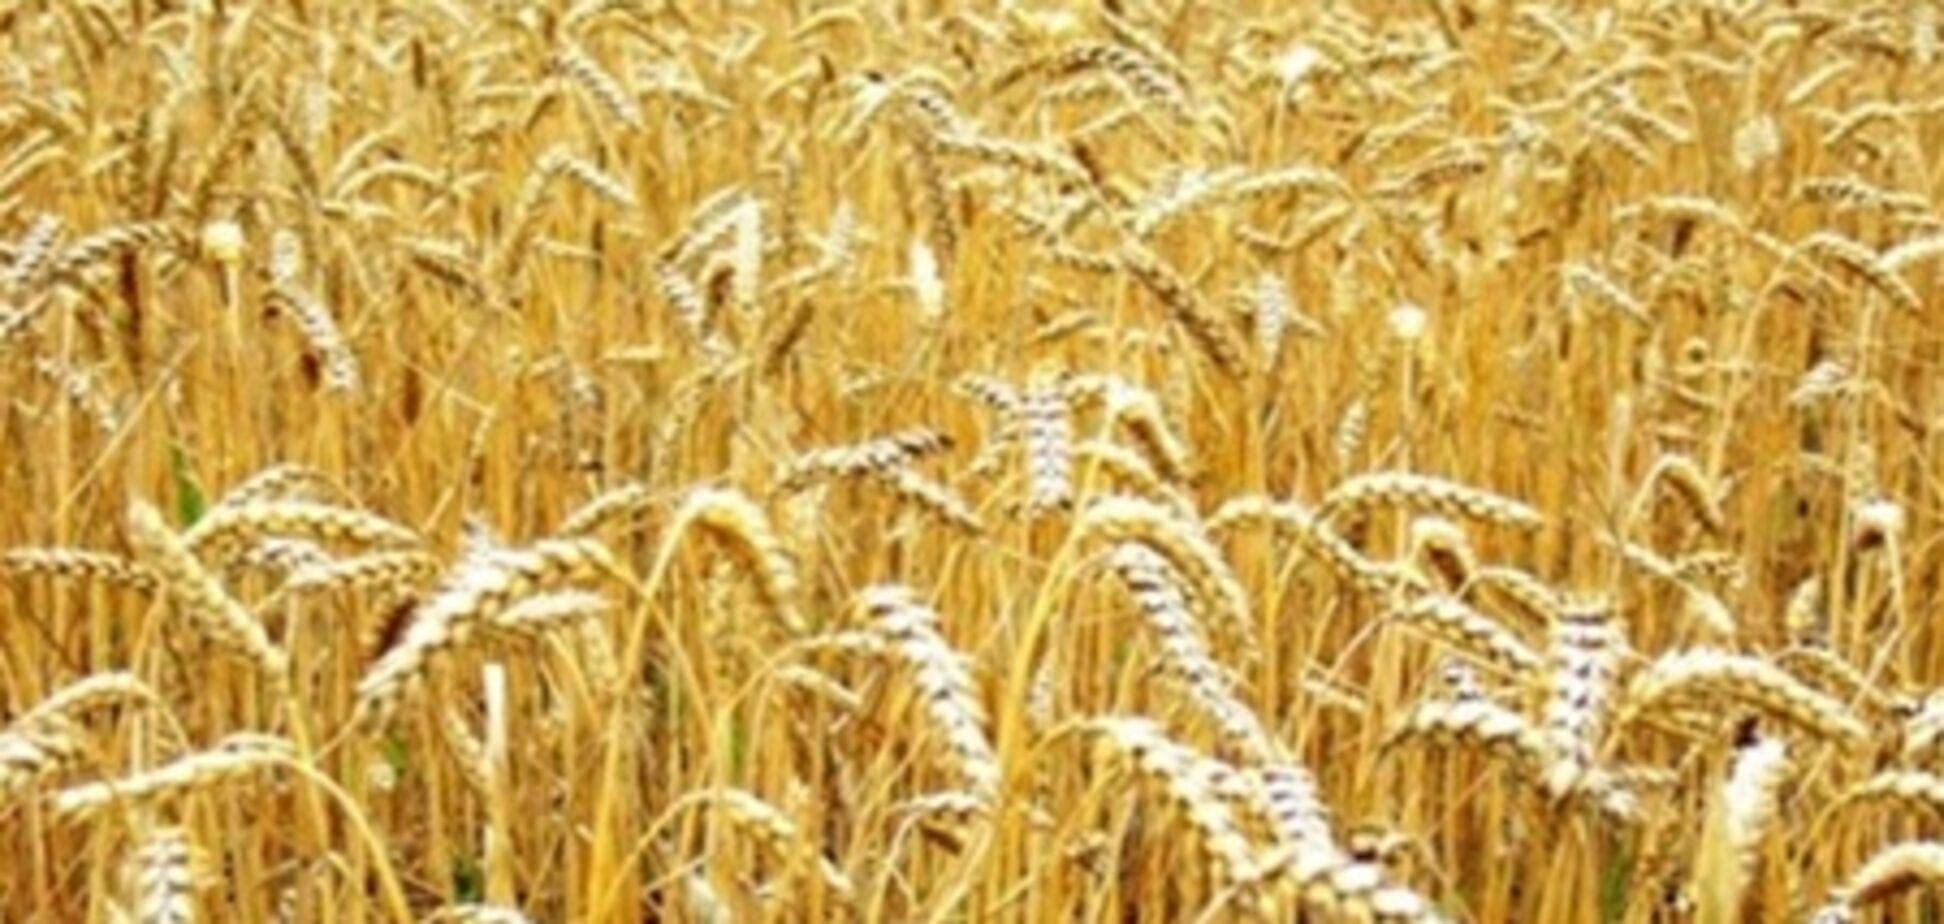 Нужно пересеять 2,5 млн га зерновых - премьер